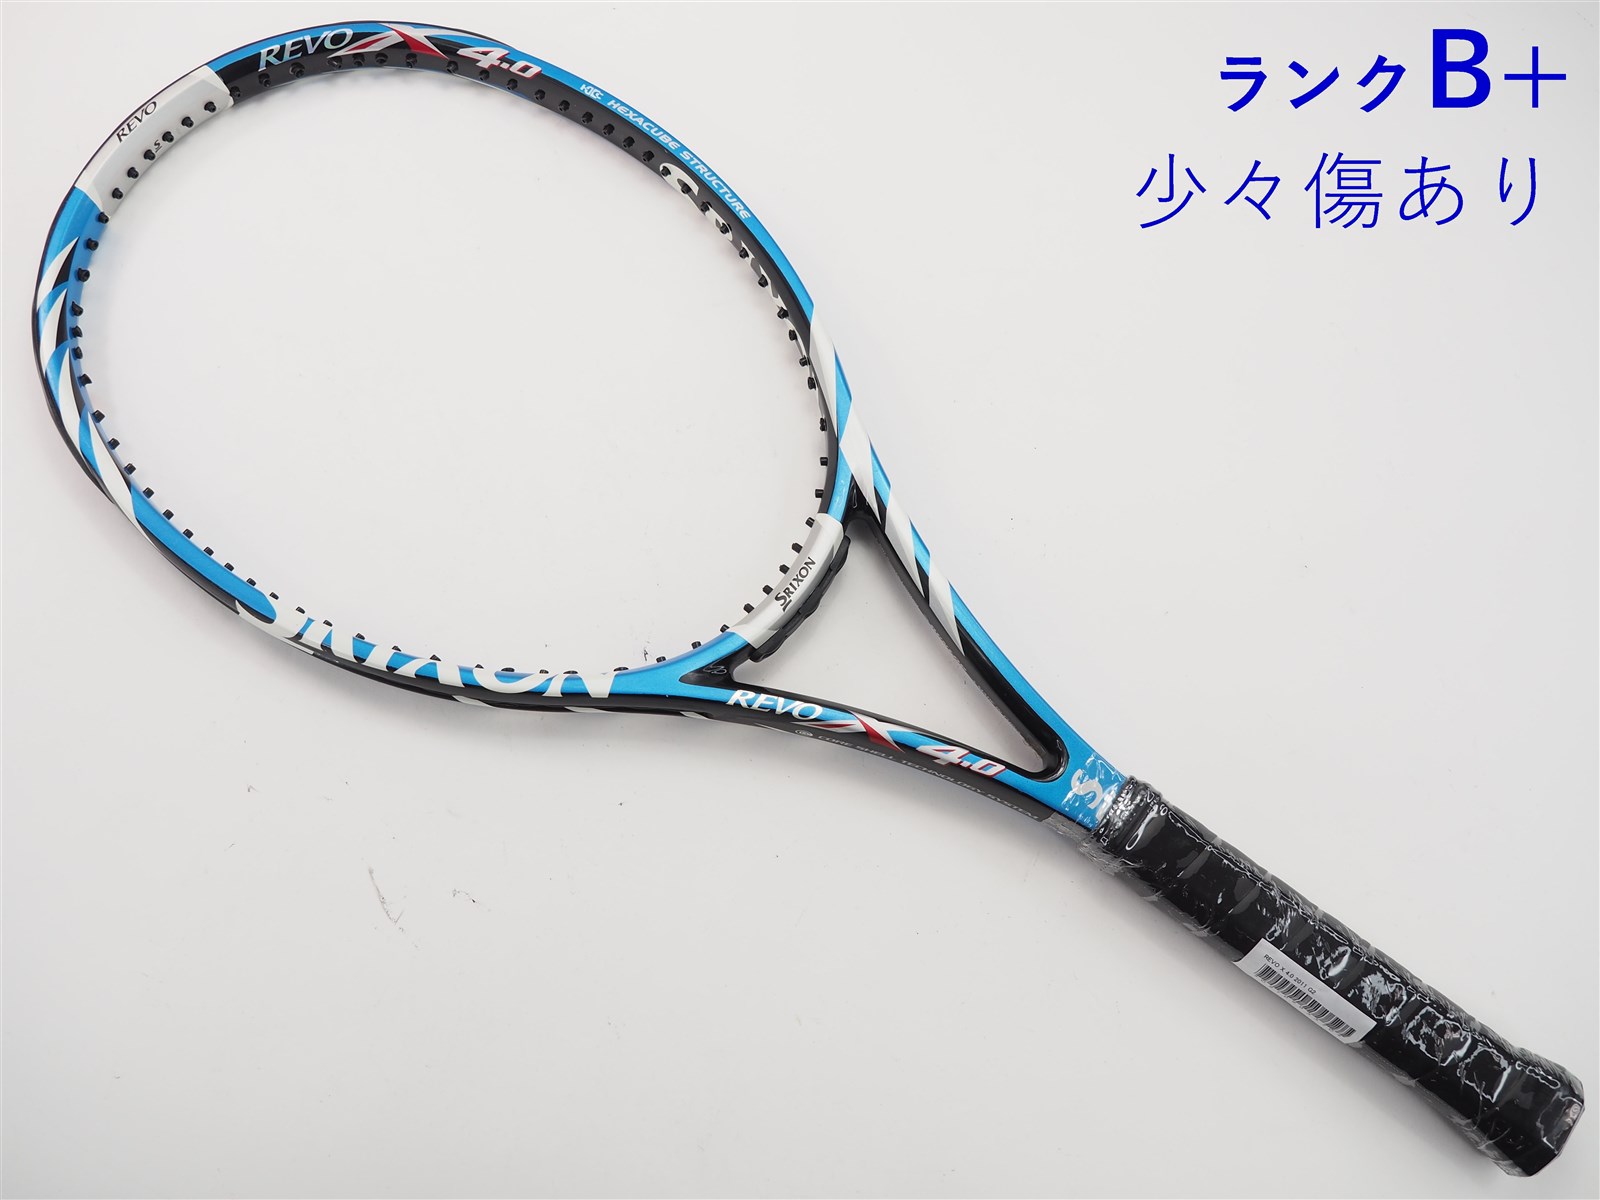 24mm重量テニスラケット スリクソン レヴォ シーエックス 4.0 2017年モデル (G2)SRIXON REVO CX 4.0 2017